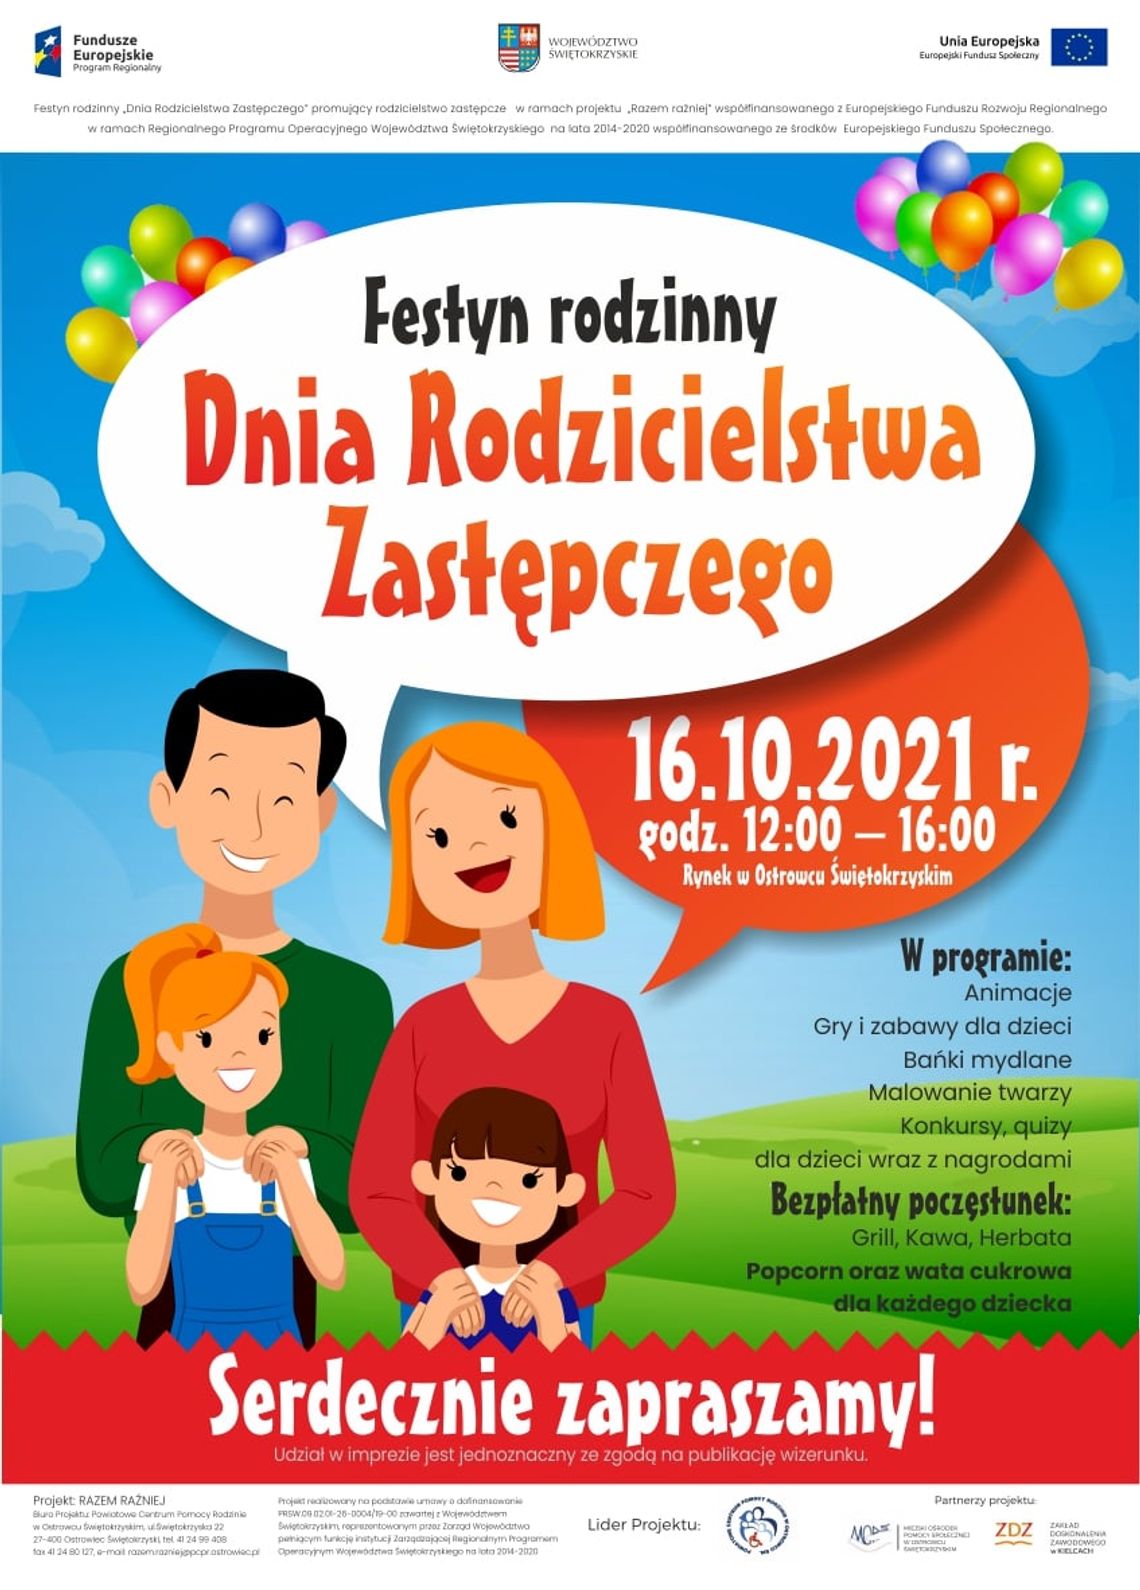 Festyn rodzinny "Dnia Rodzicielstwa Zastępczego"